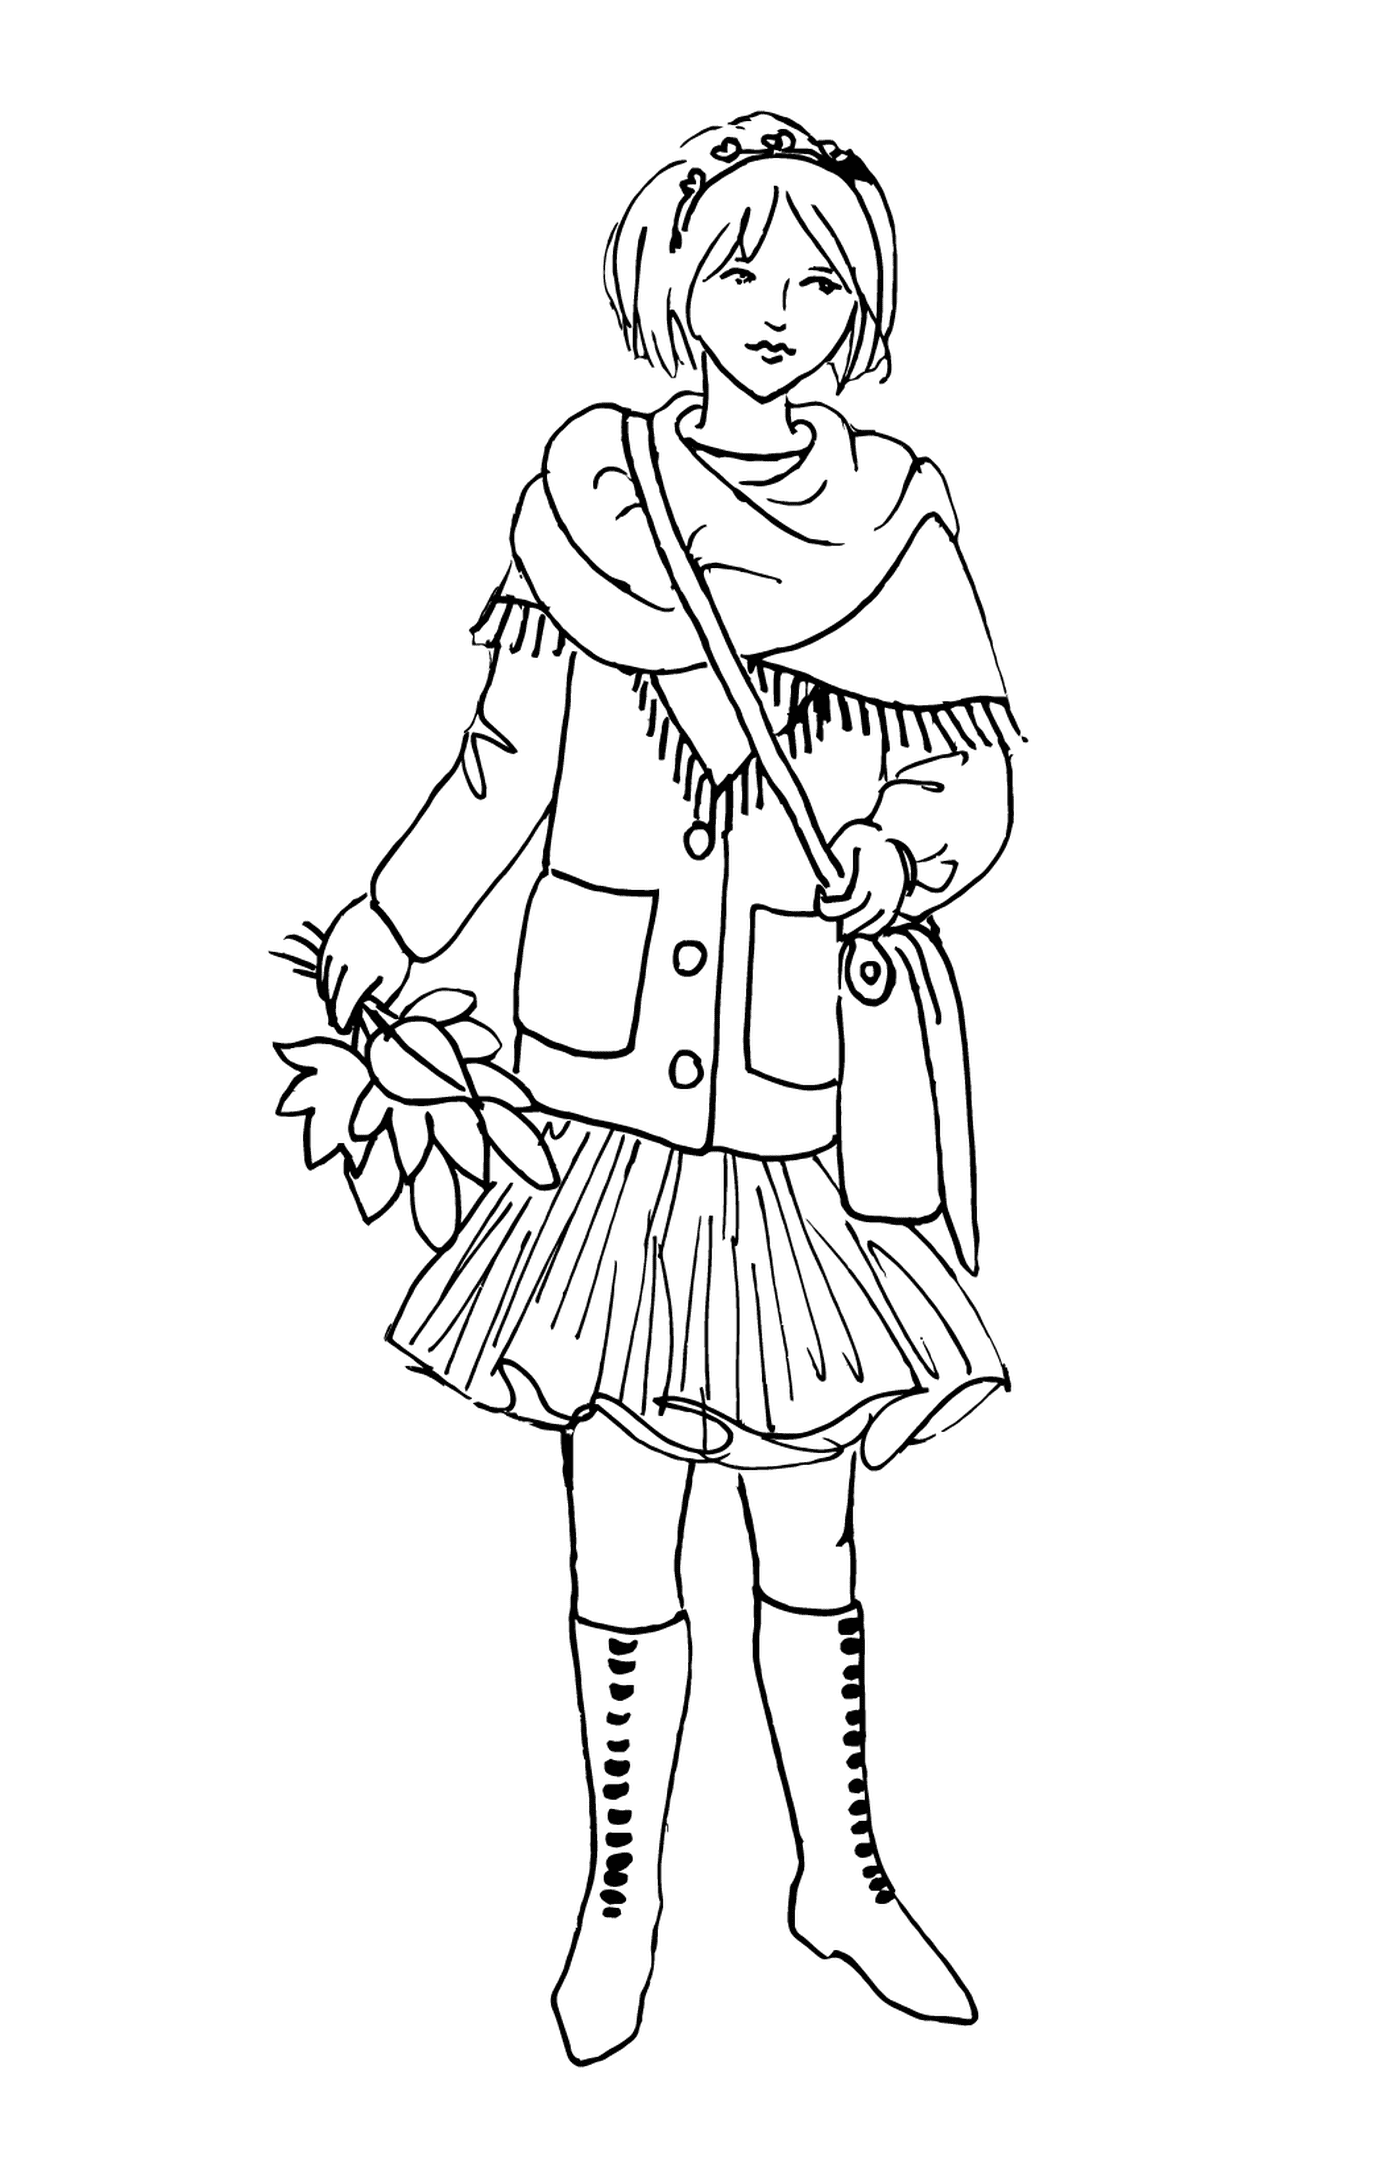  Ein Mädchen im Winter Kleidung 